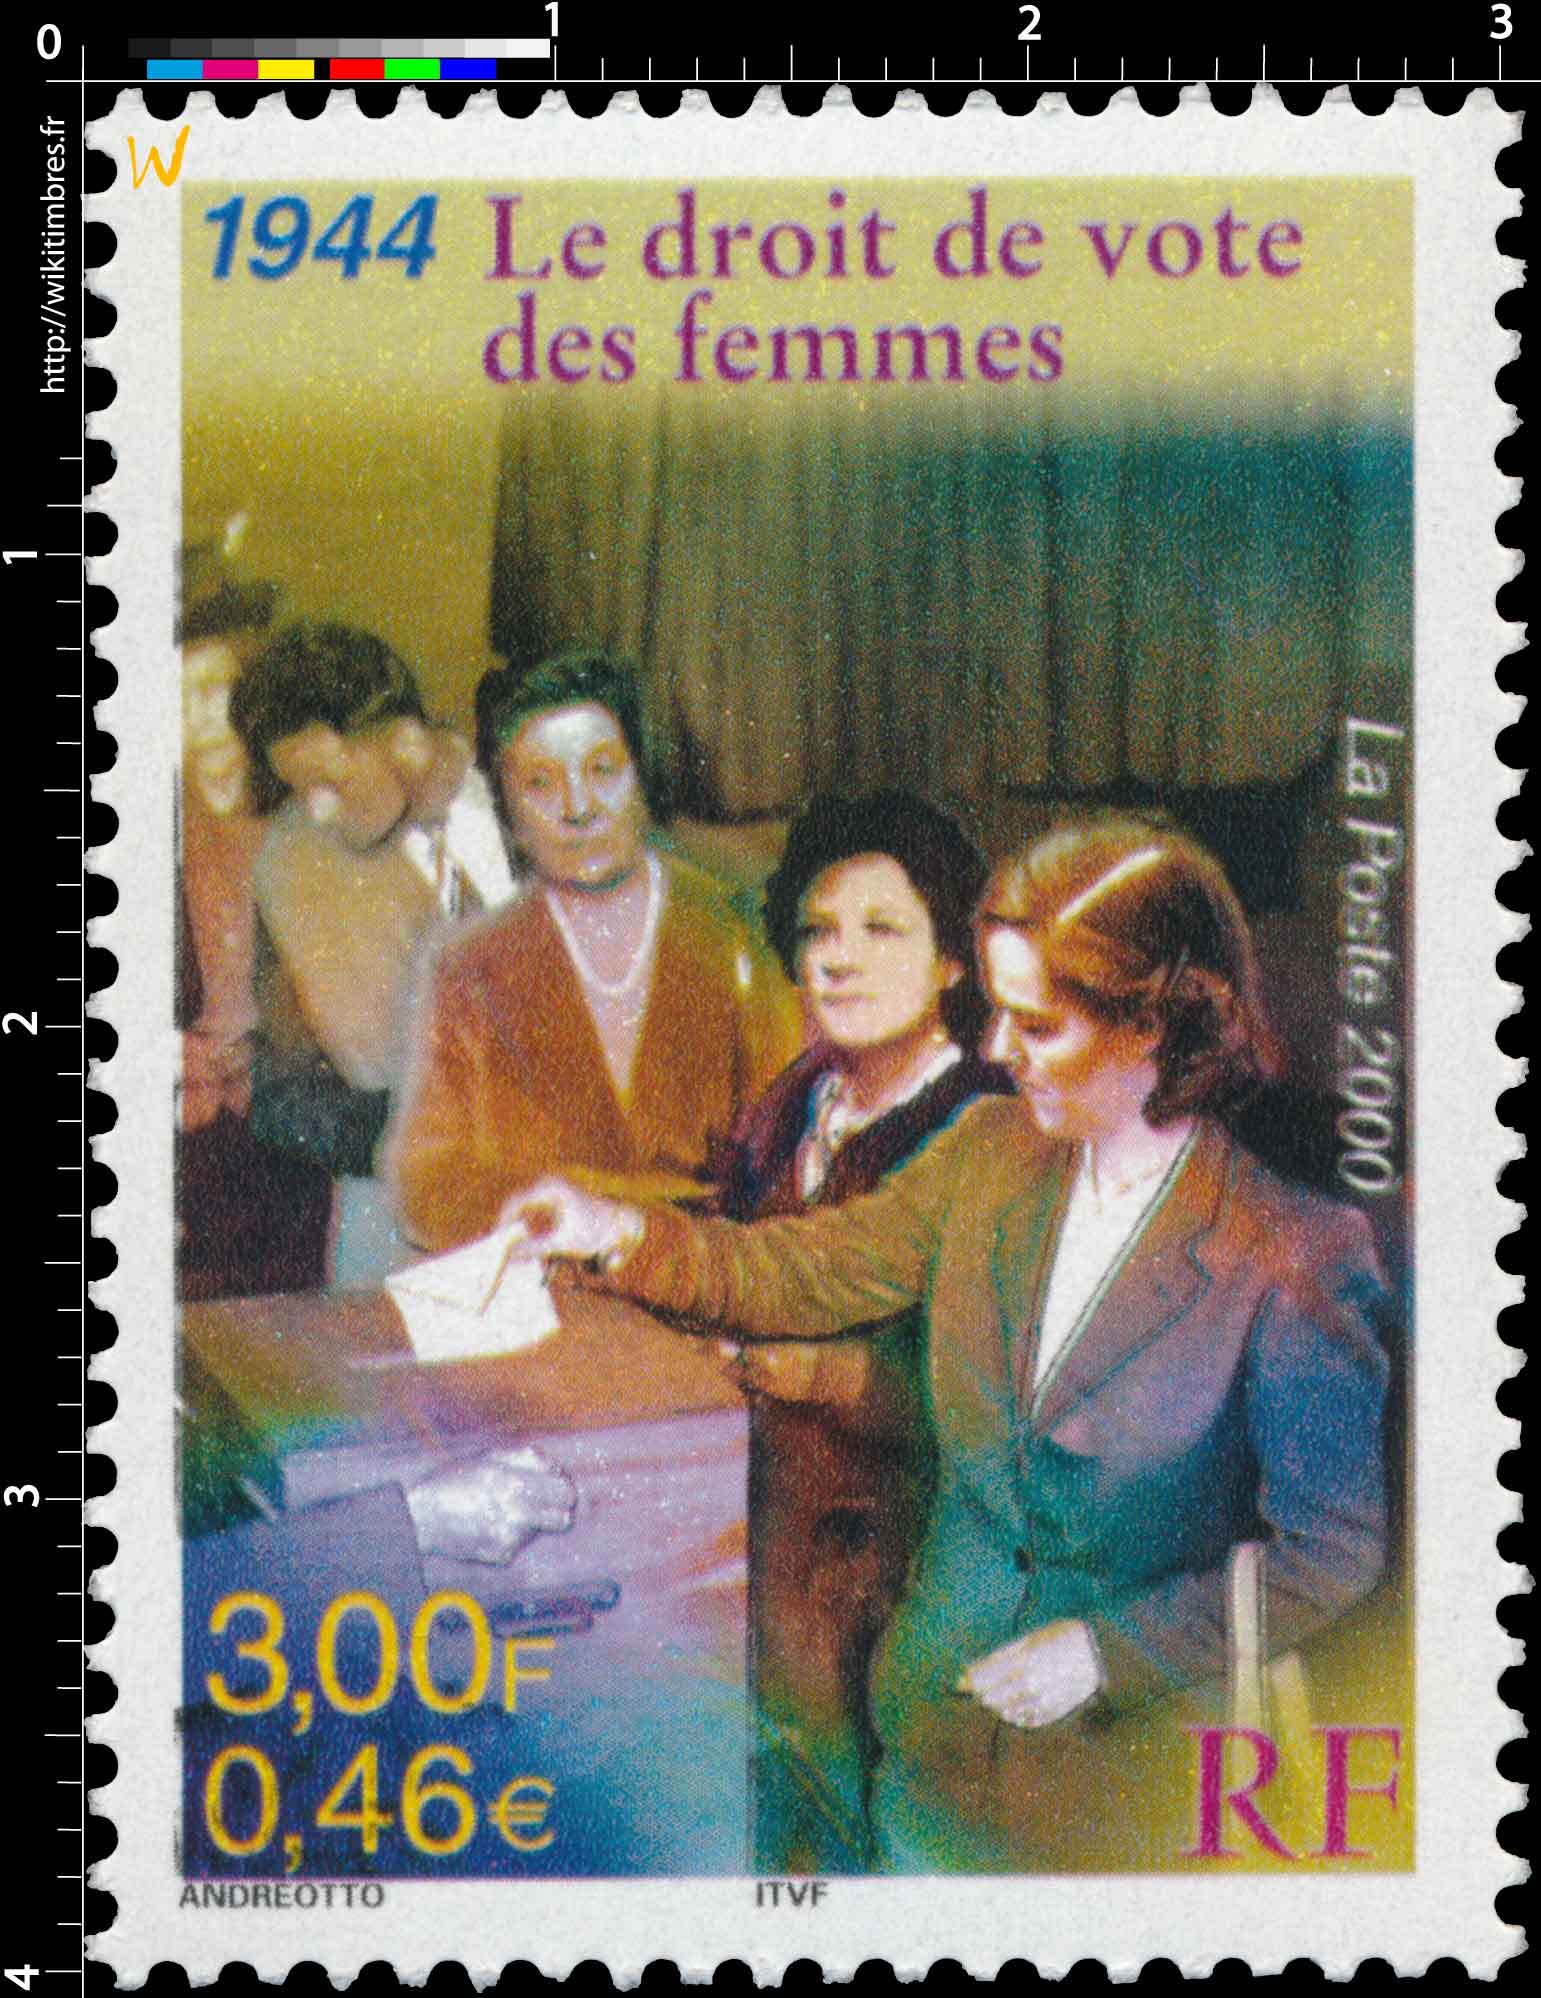 2000 1944 Le droit de vote des femmes